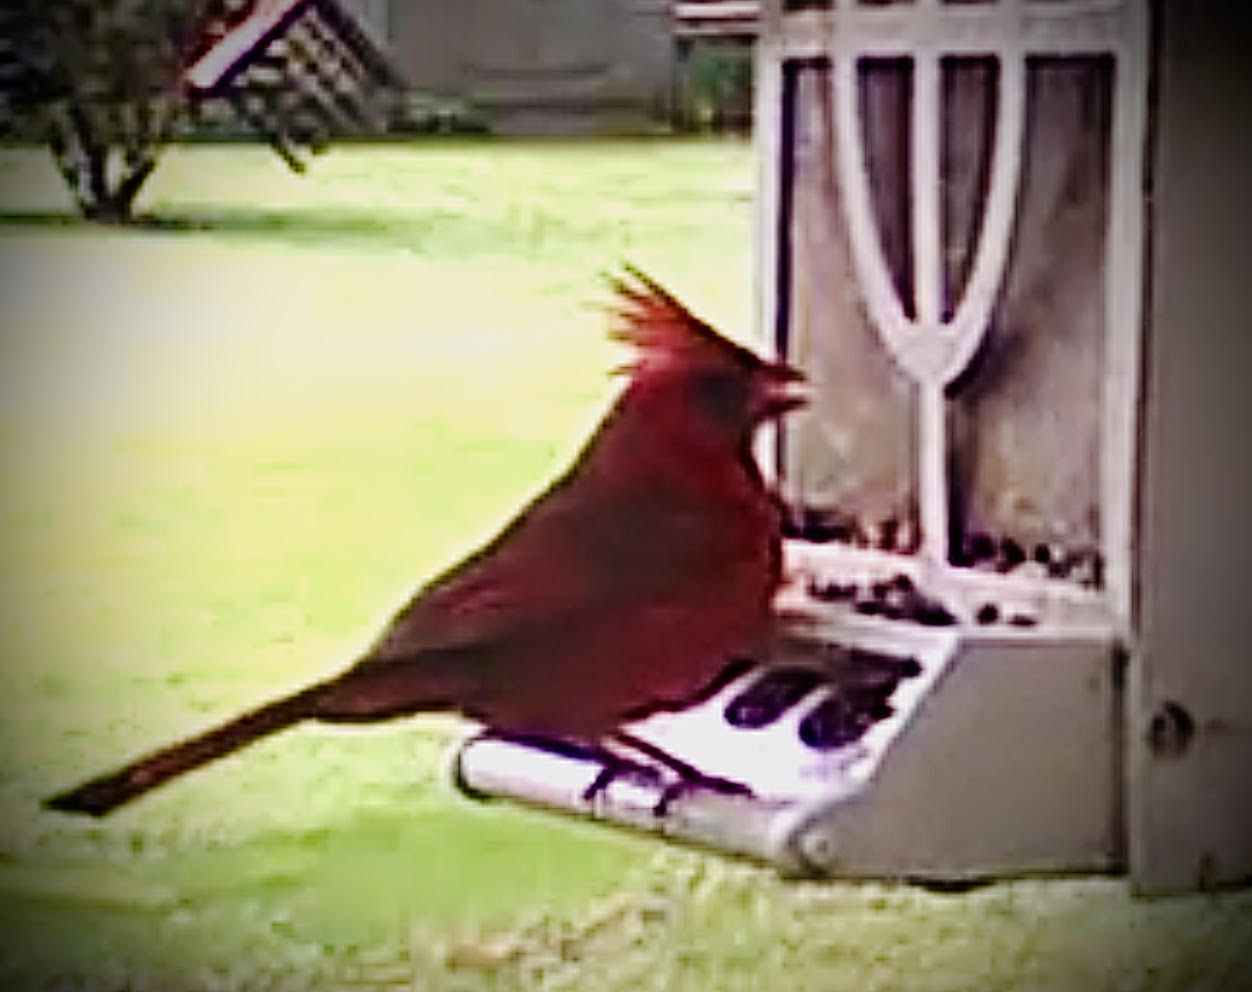 "Spirit Cardinal"